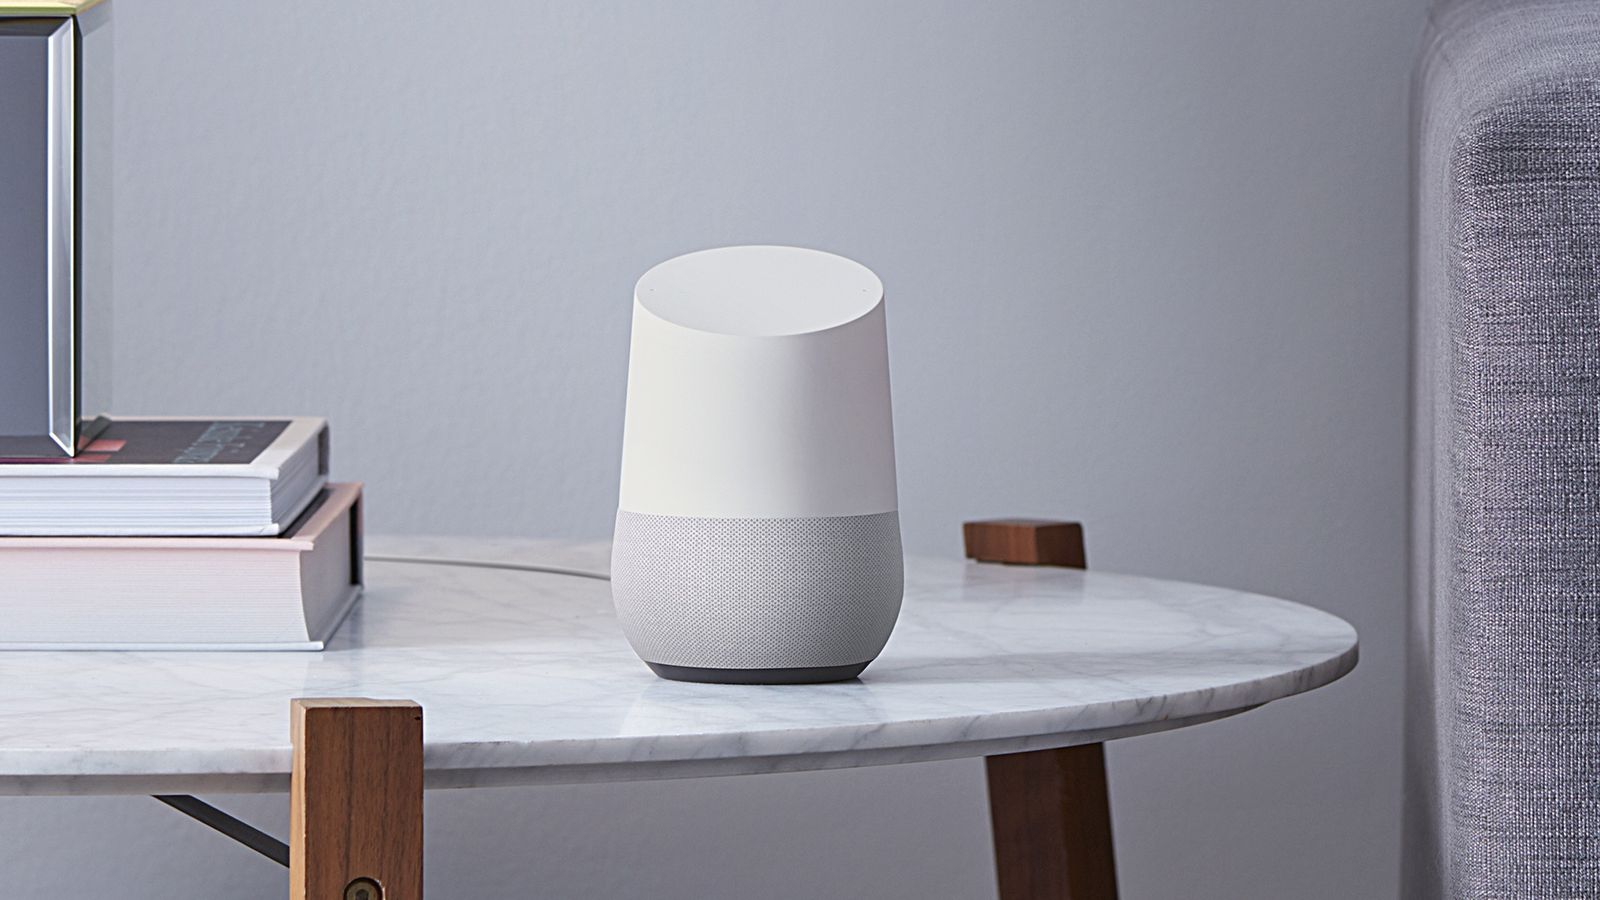 Google Dan Yeni Stereo Speaker Home Max